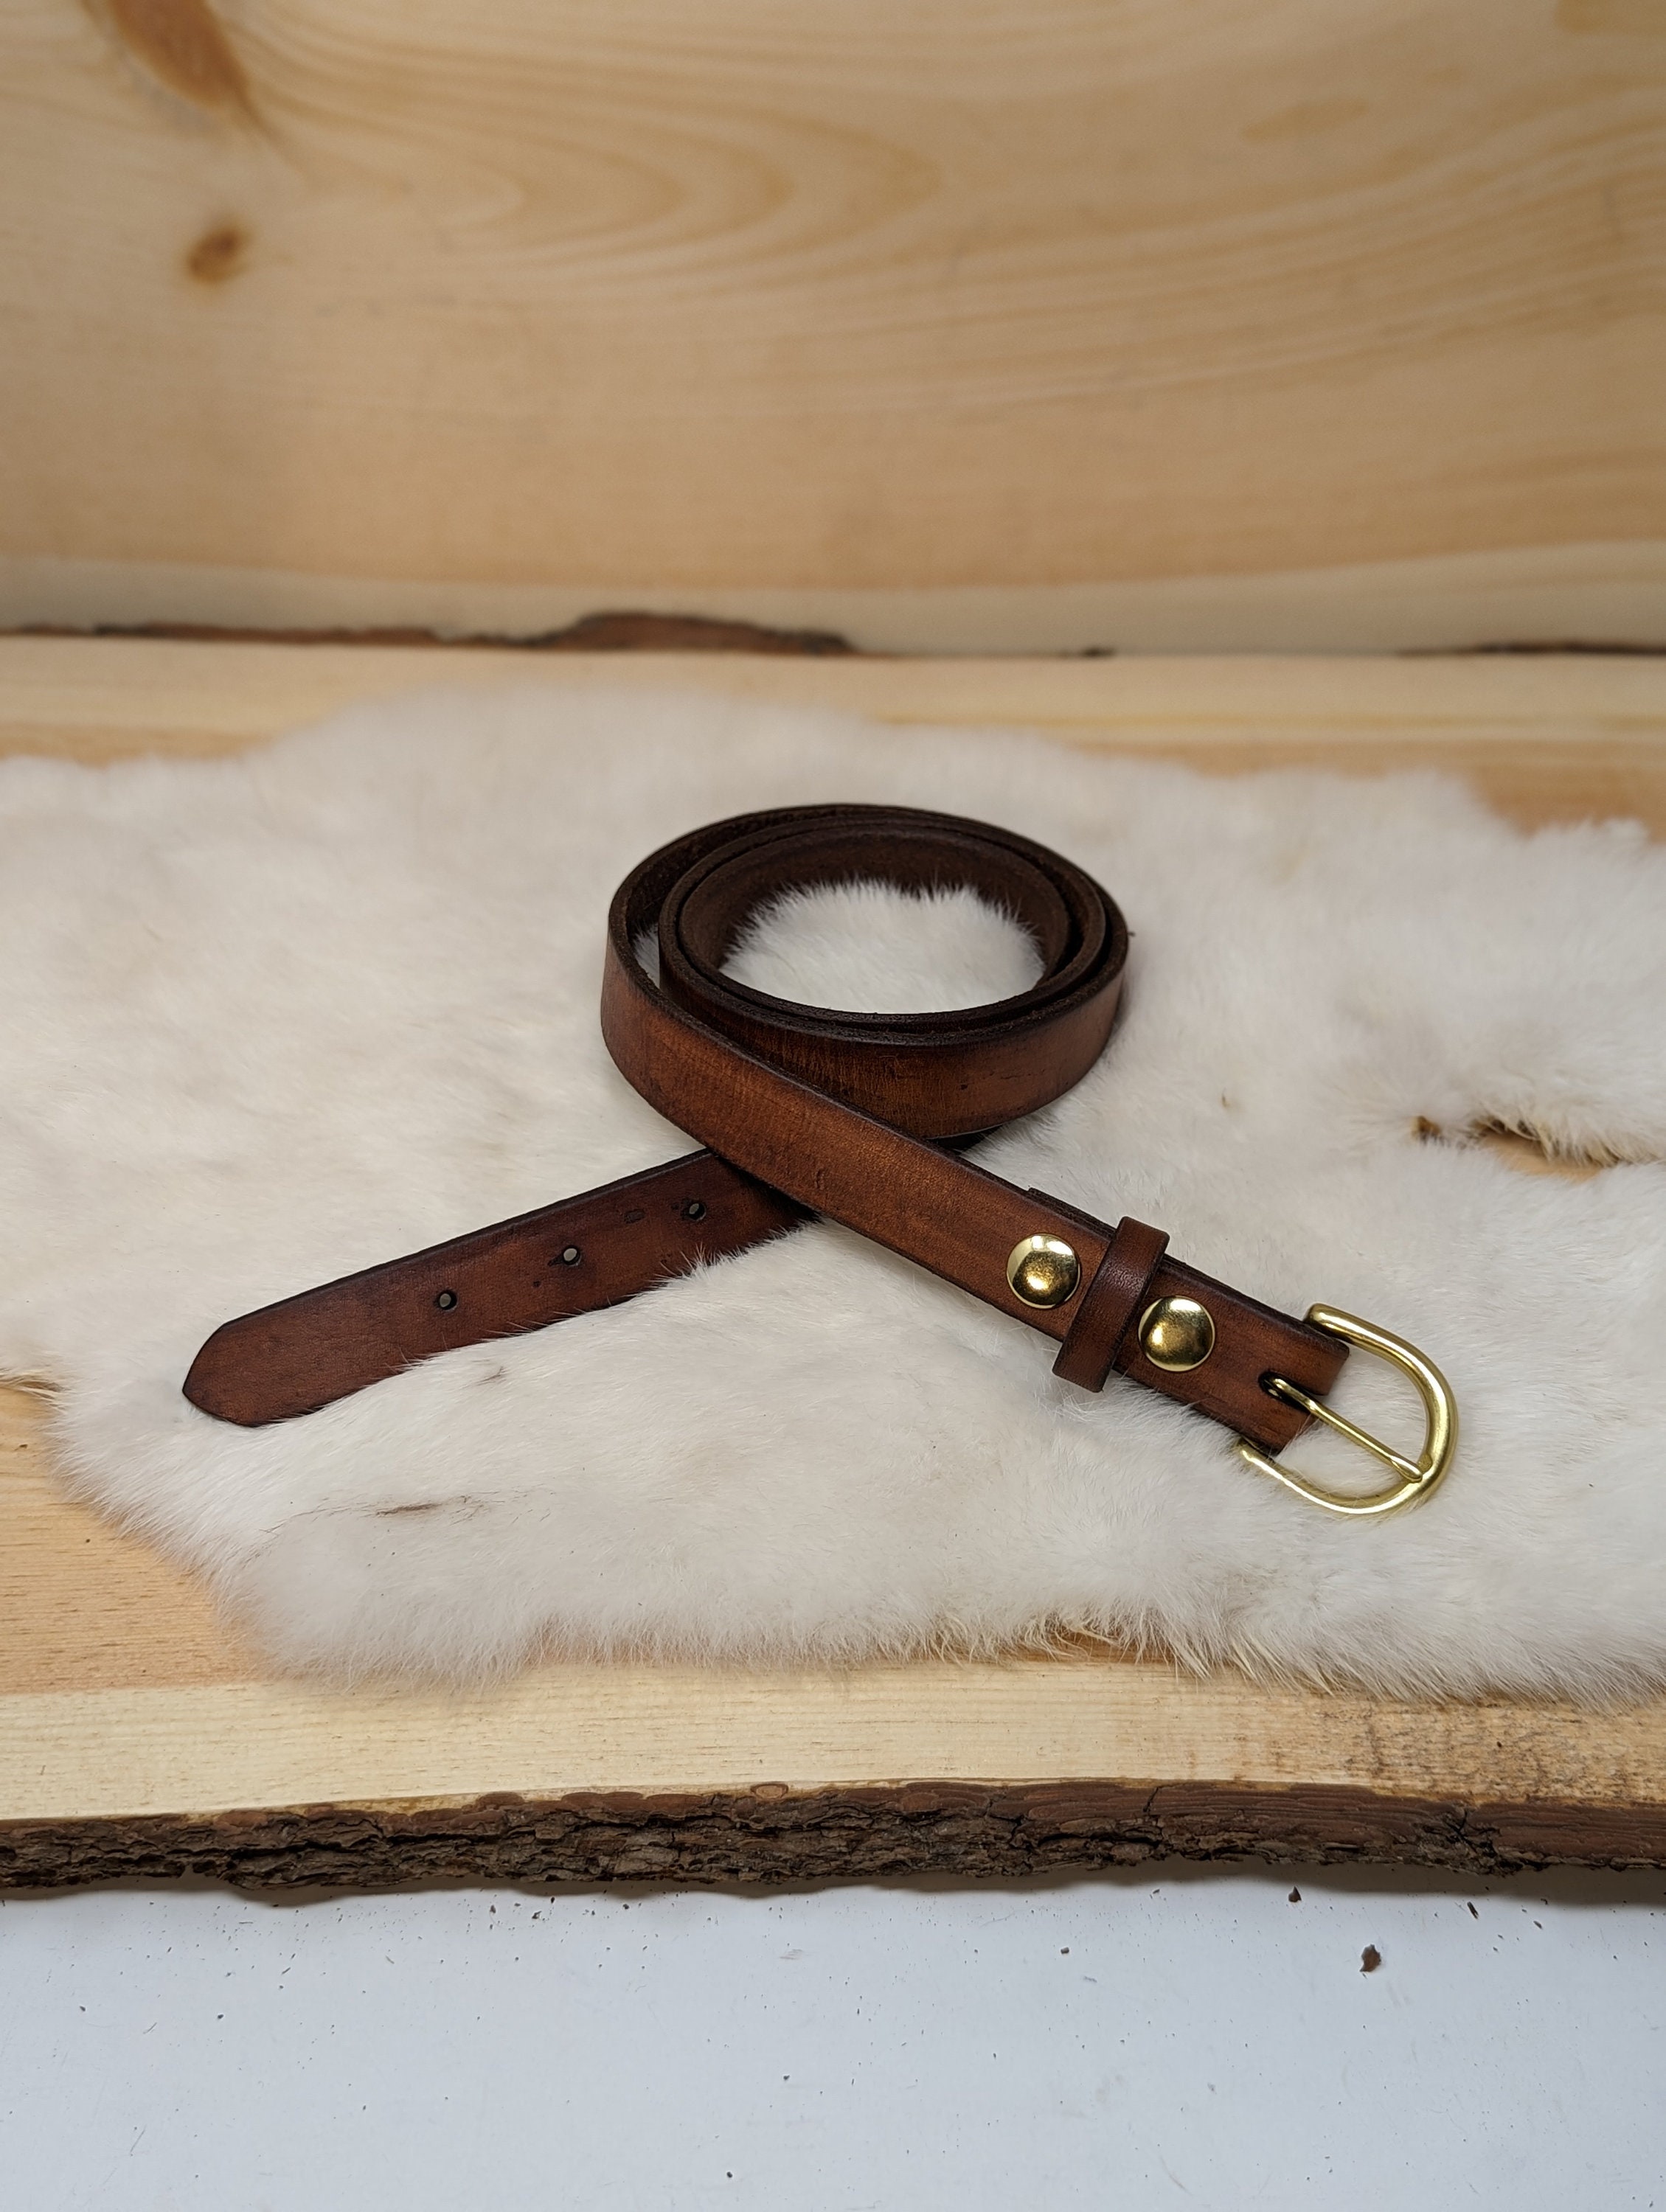 Handmade oak bark leather, heavy duty belt with solid brass buckle